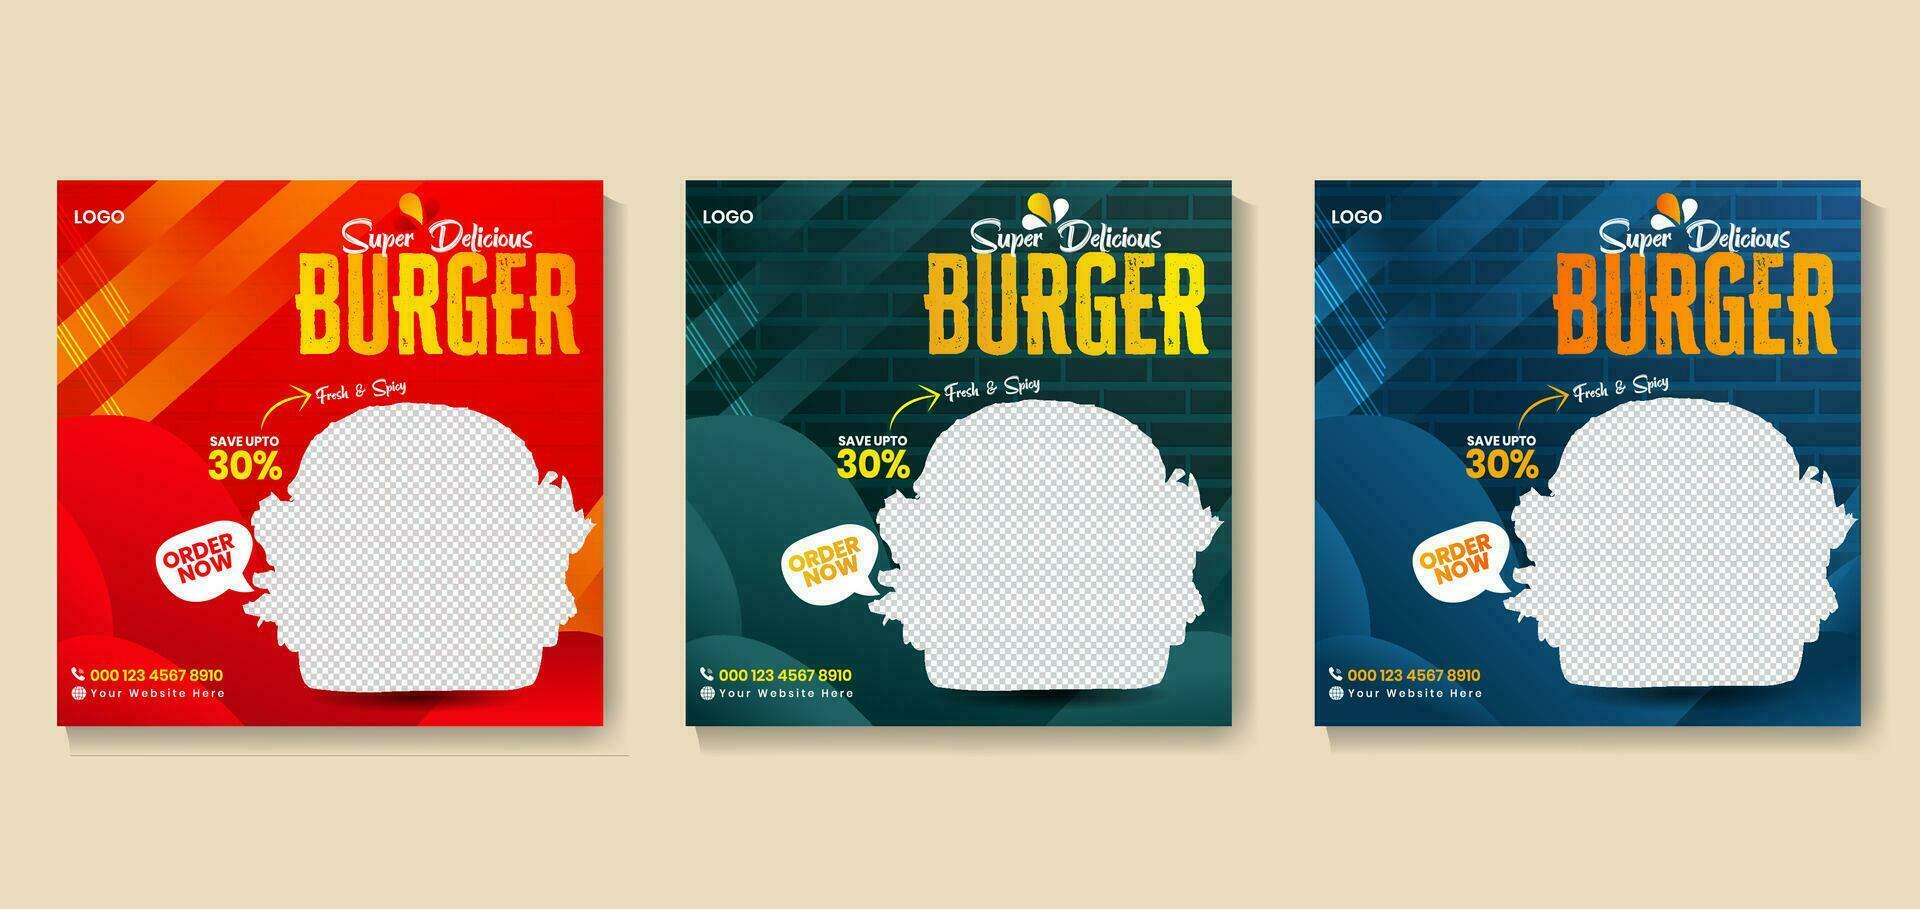 Burger Sozial Medien Post Vorlage mit einfach sieht aus und modern Konzept und bündeln set.flyer oder Poster Design zum online Geschäft Promotion.super köstlich schnell Essen Sozial Medien Post Vorlage. vektor